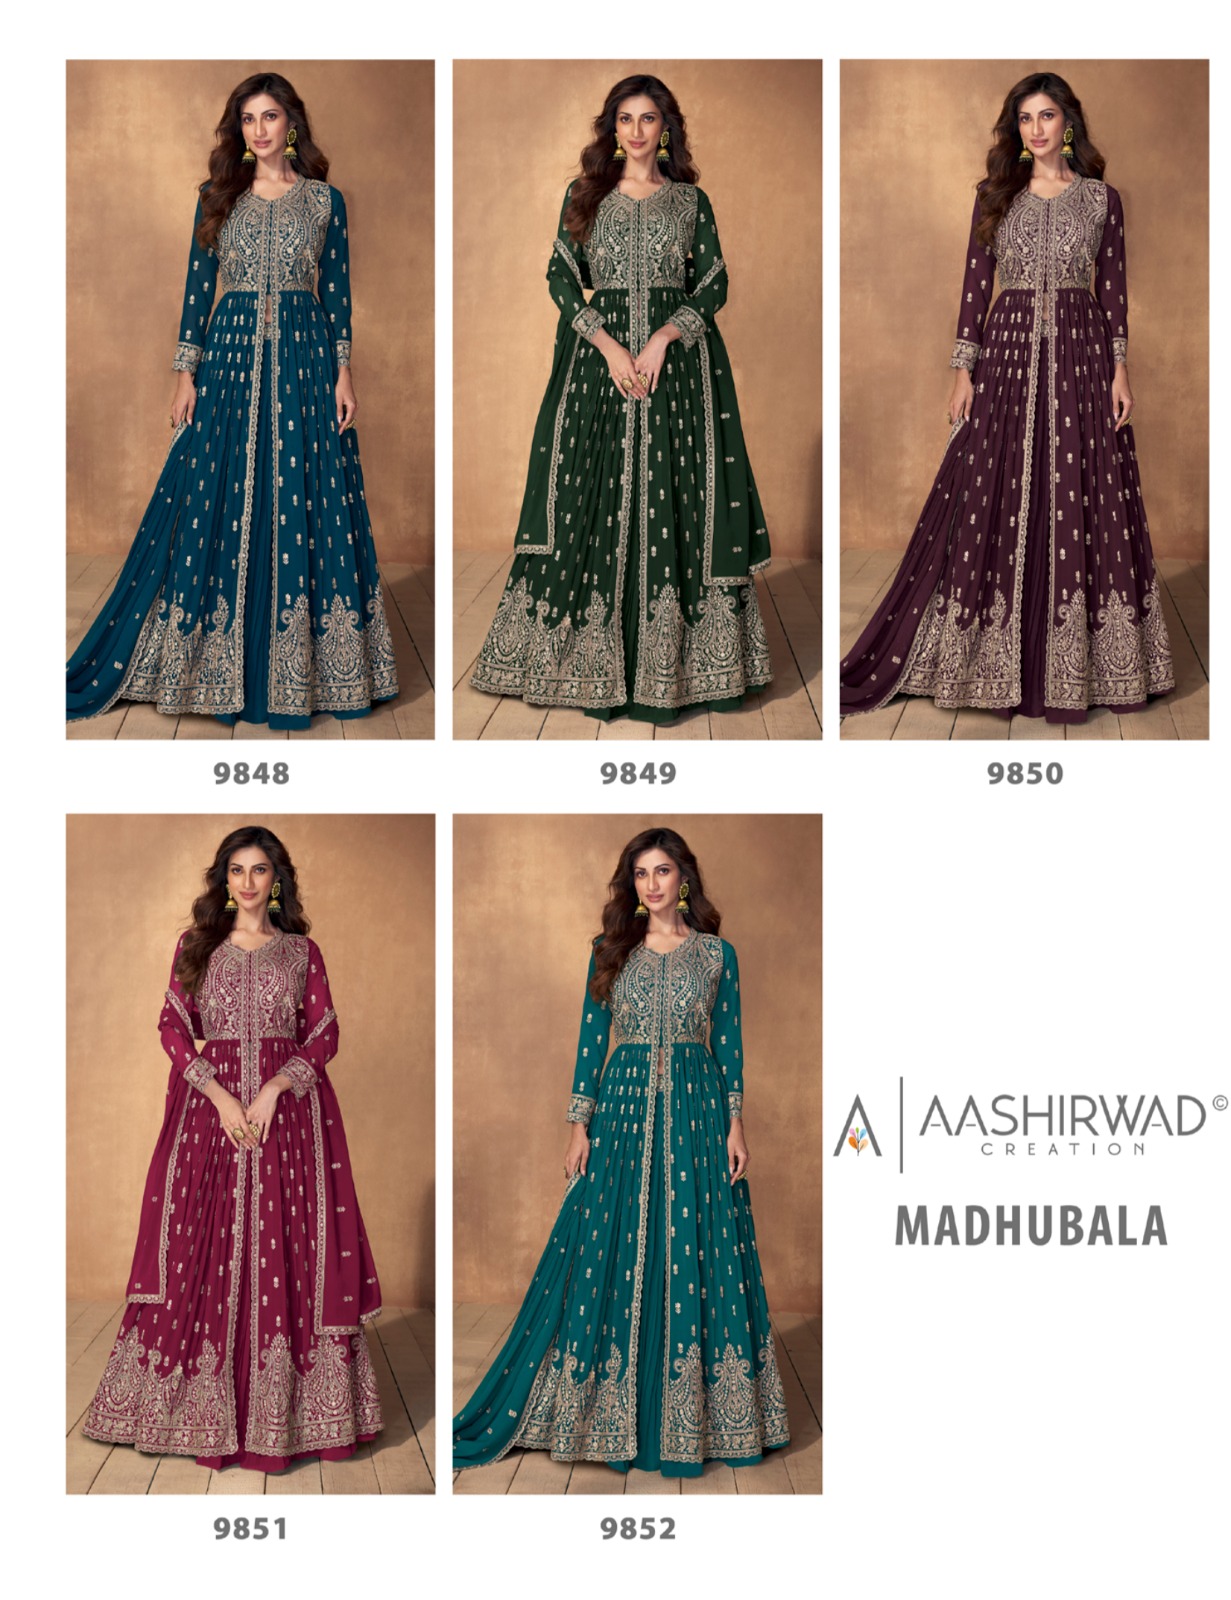 Aashirward  Madhubala collection 8